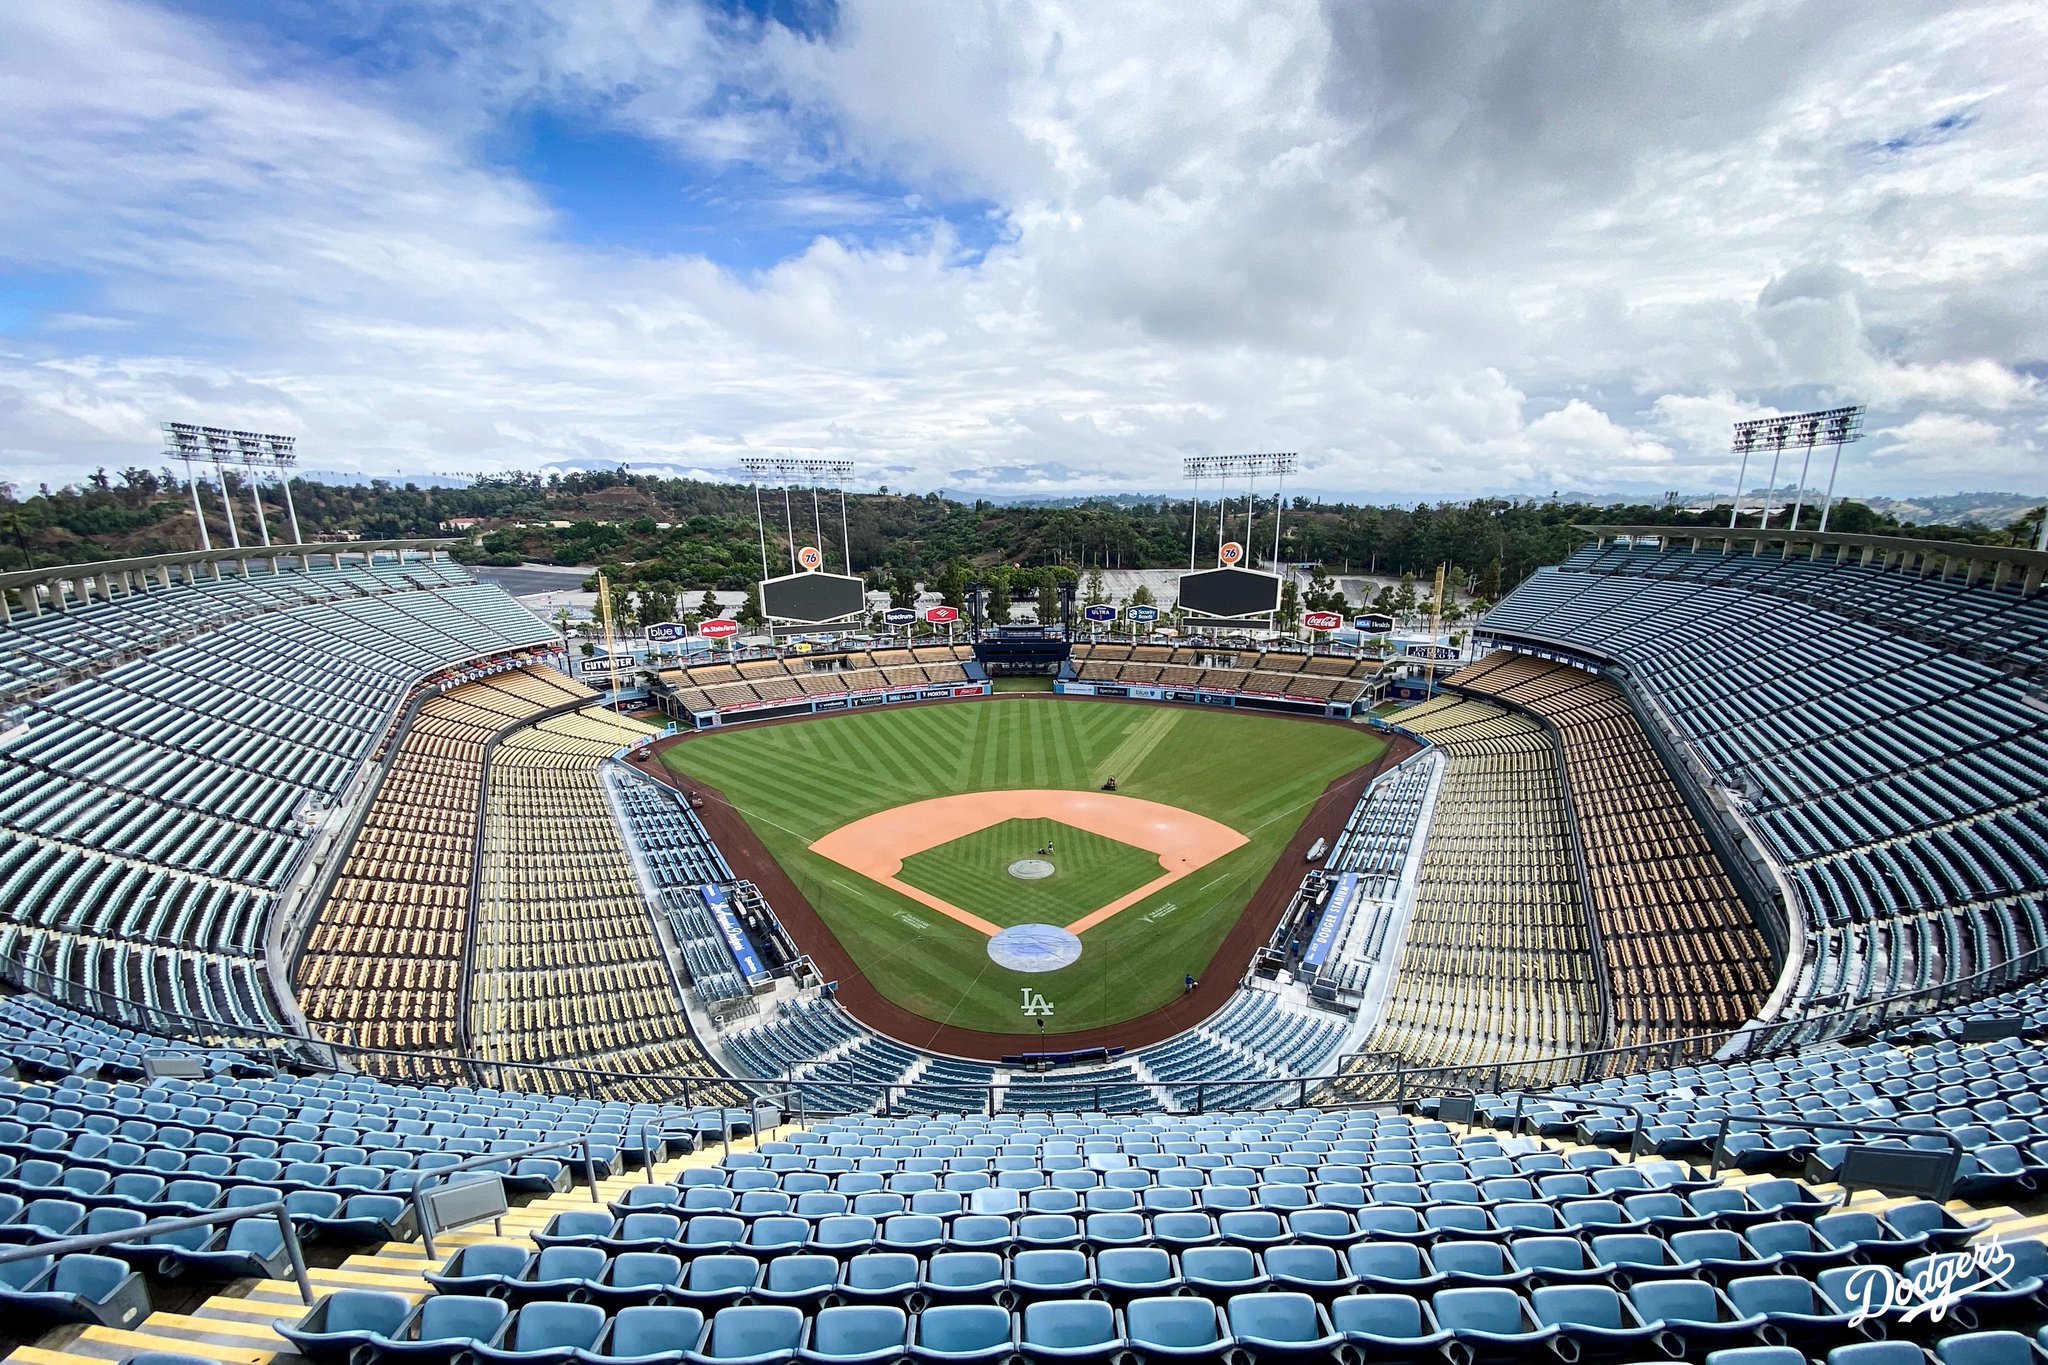 Los Angeles Dodgers on X: Dodger Stadium trending? We get it. It